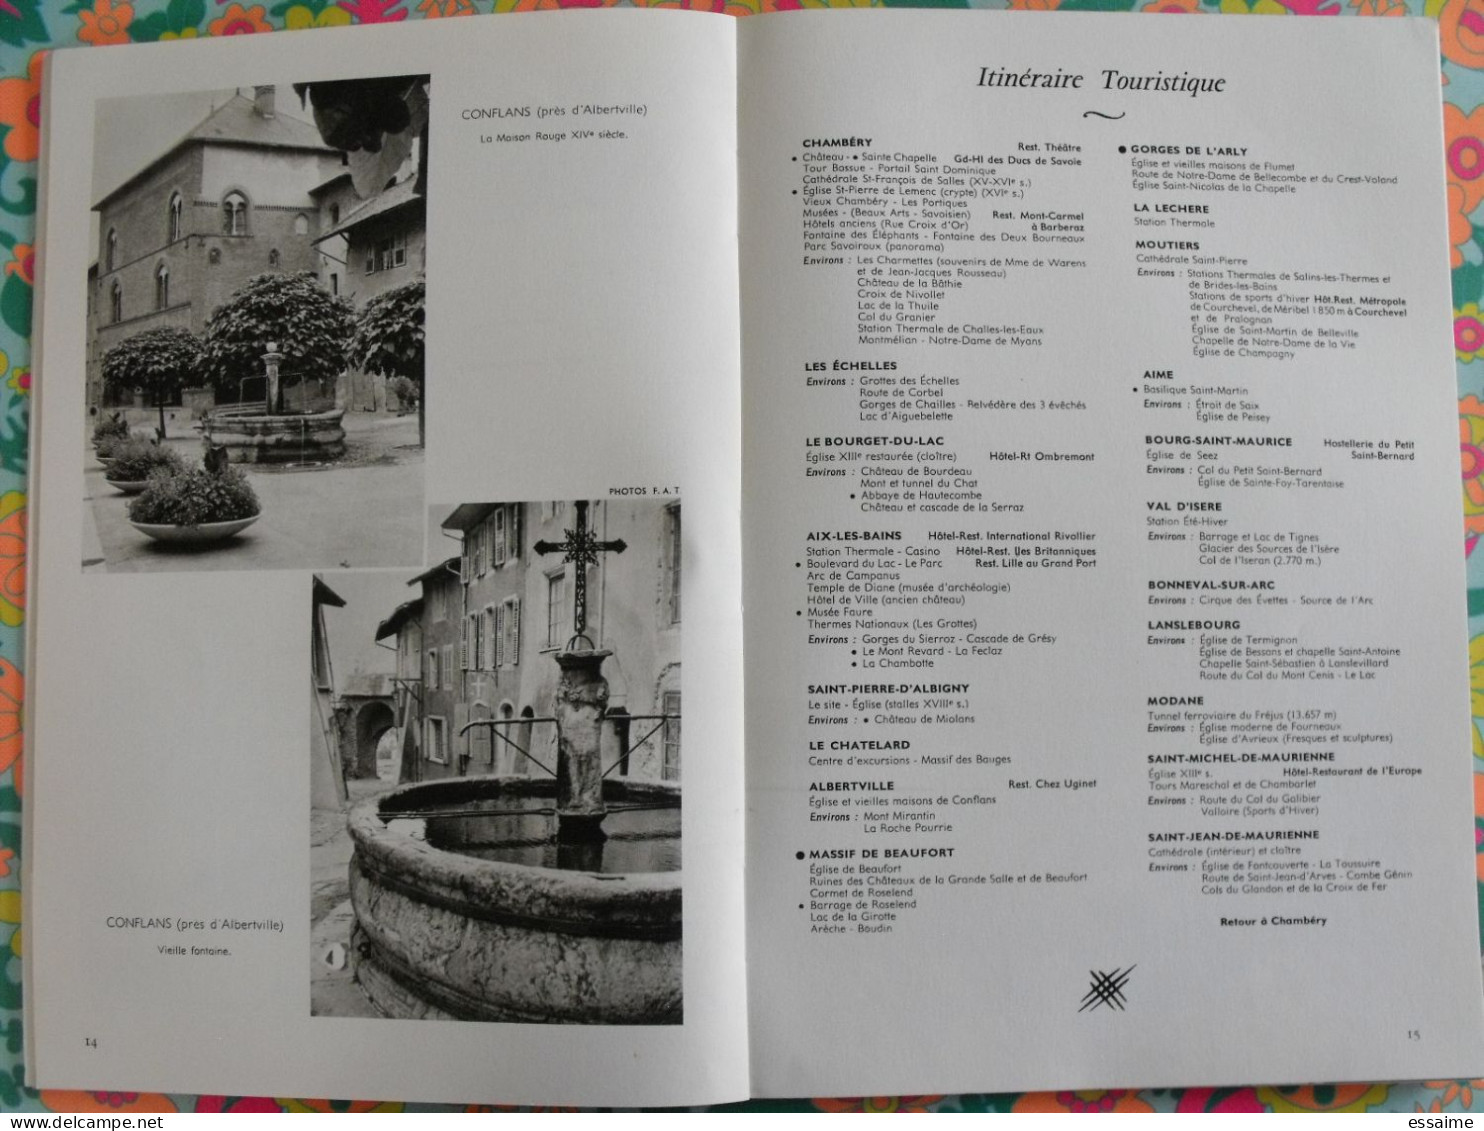 La France à table n° 132. 1968. Savoie. chambéry aix-les-bains beaufort arly aime modane bonneval chatelard. gastronomie